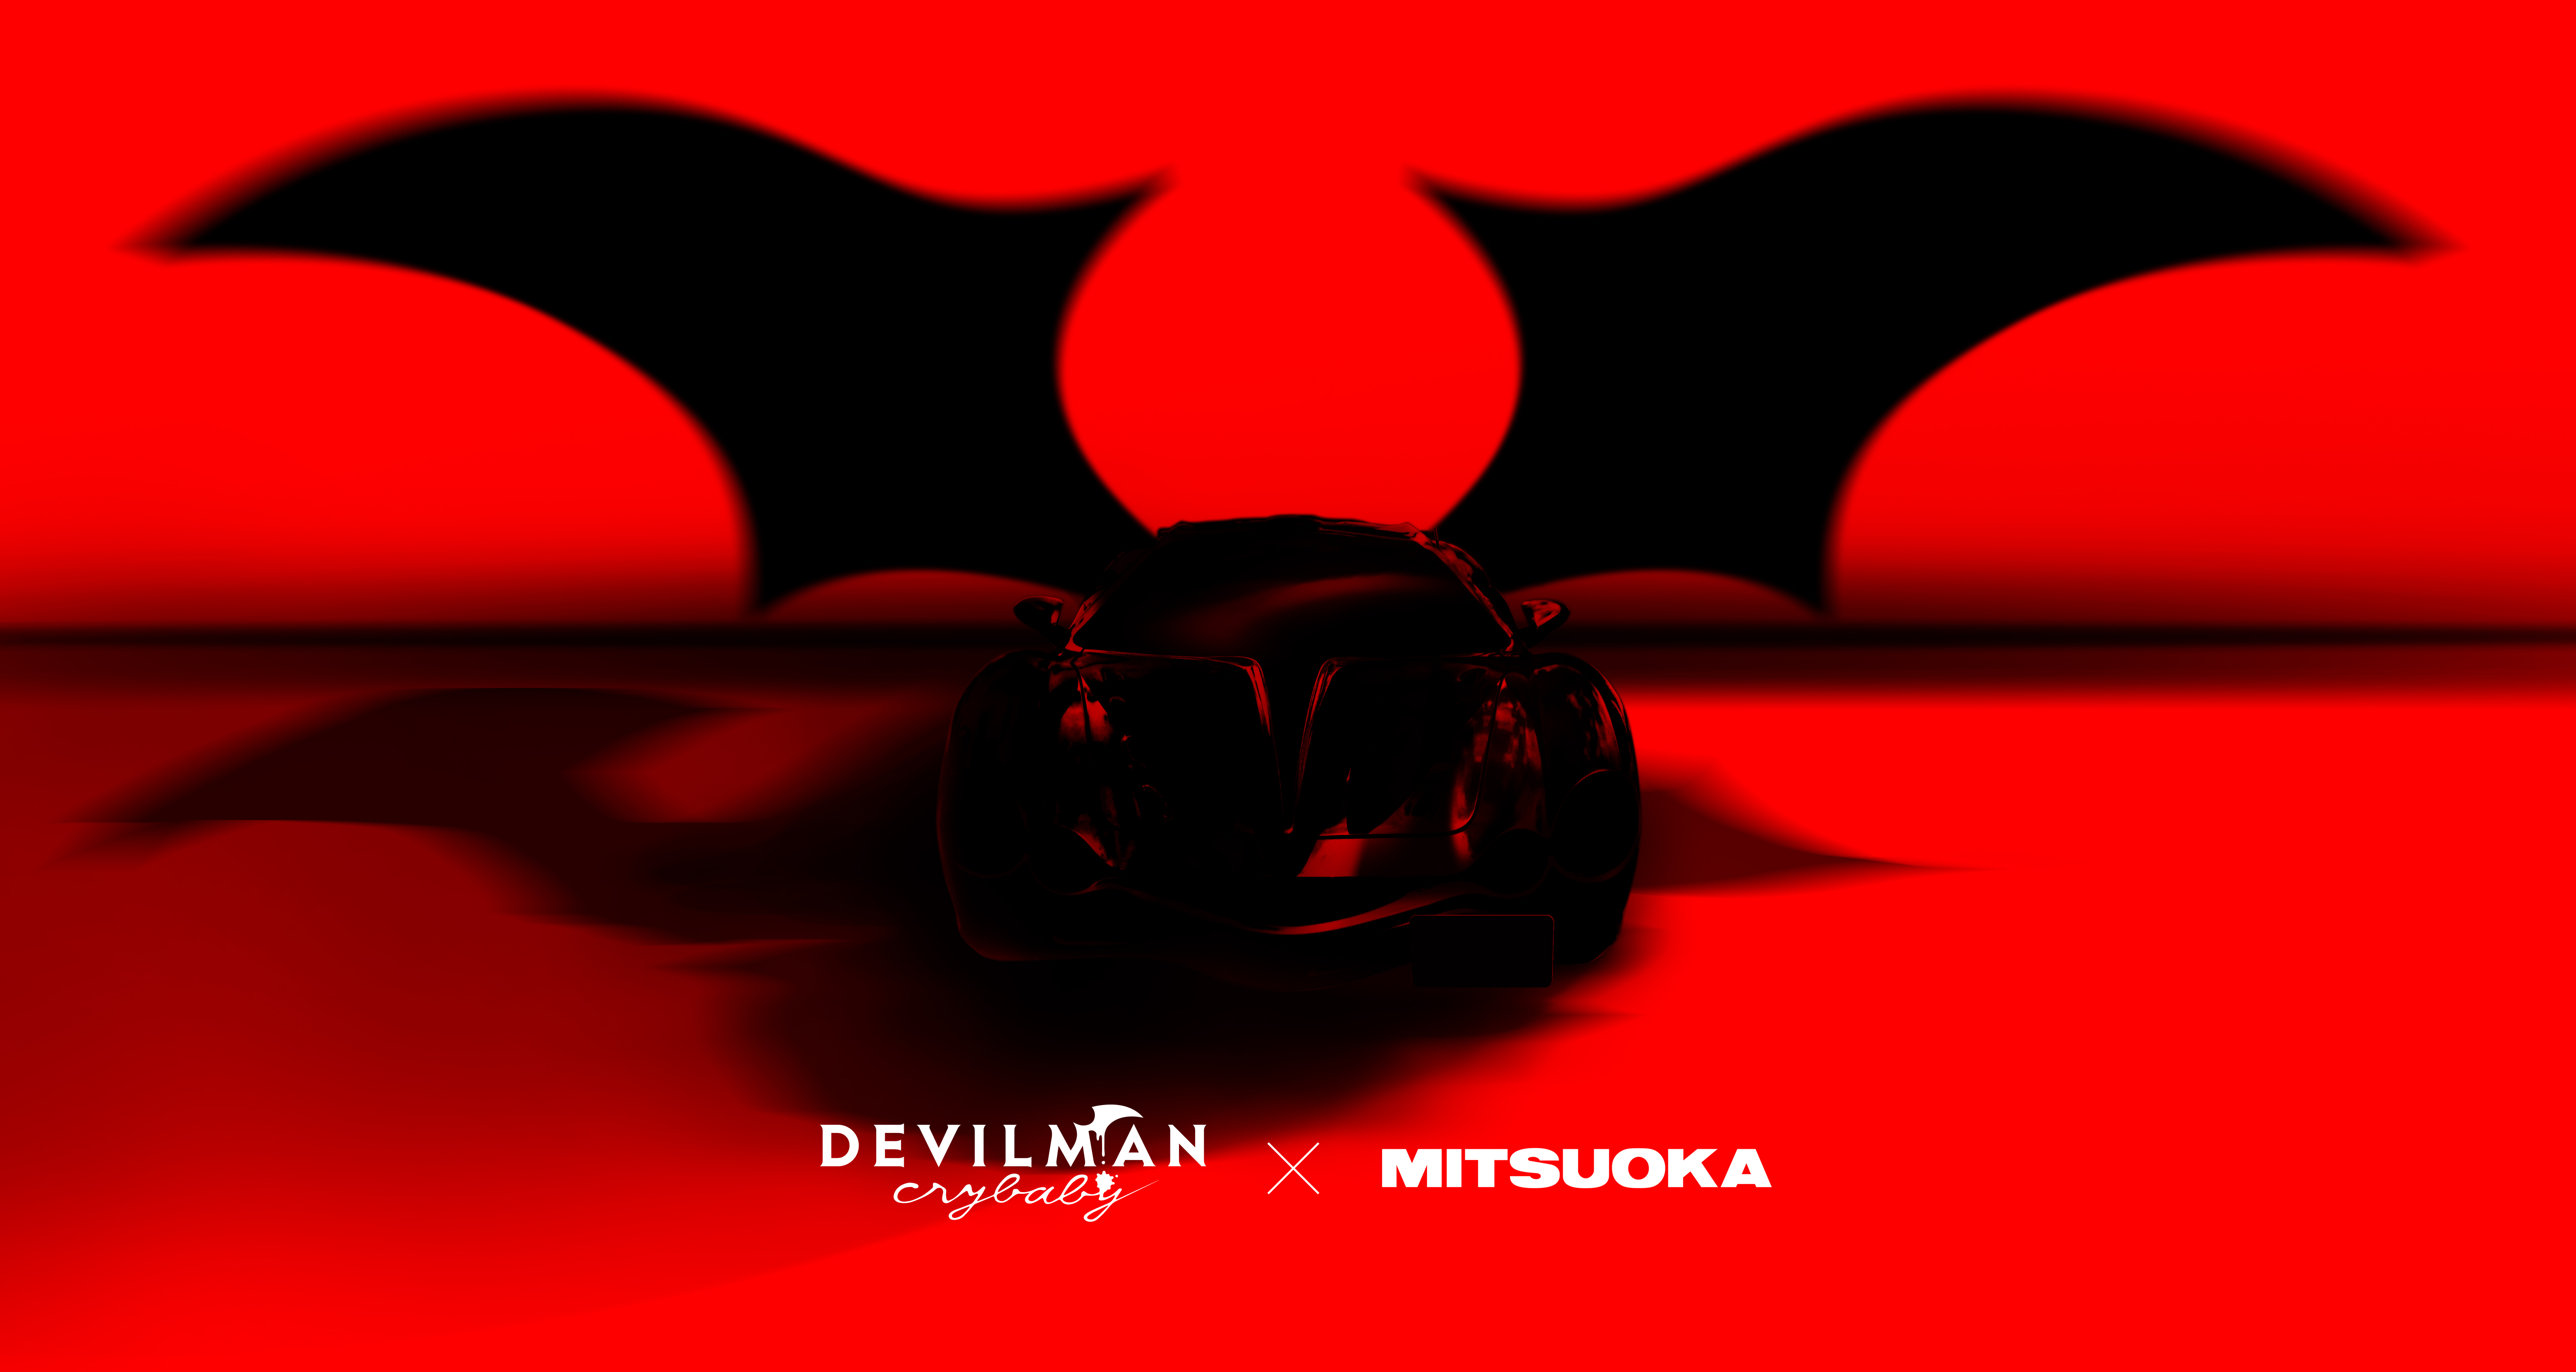 下載 Devilman Crybaby の全話一挙上映イベントが開催決定 Download ダウンロード Devilman Crybaby 全话一举上映活动决定举行 下载ダウンロードdownload 百度云网盘